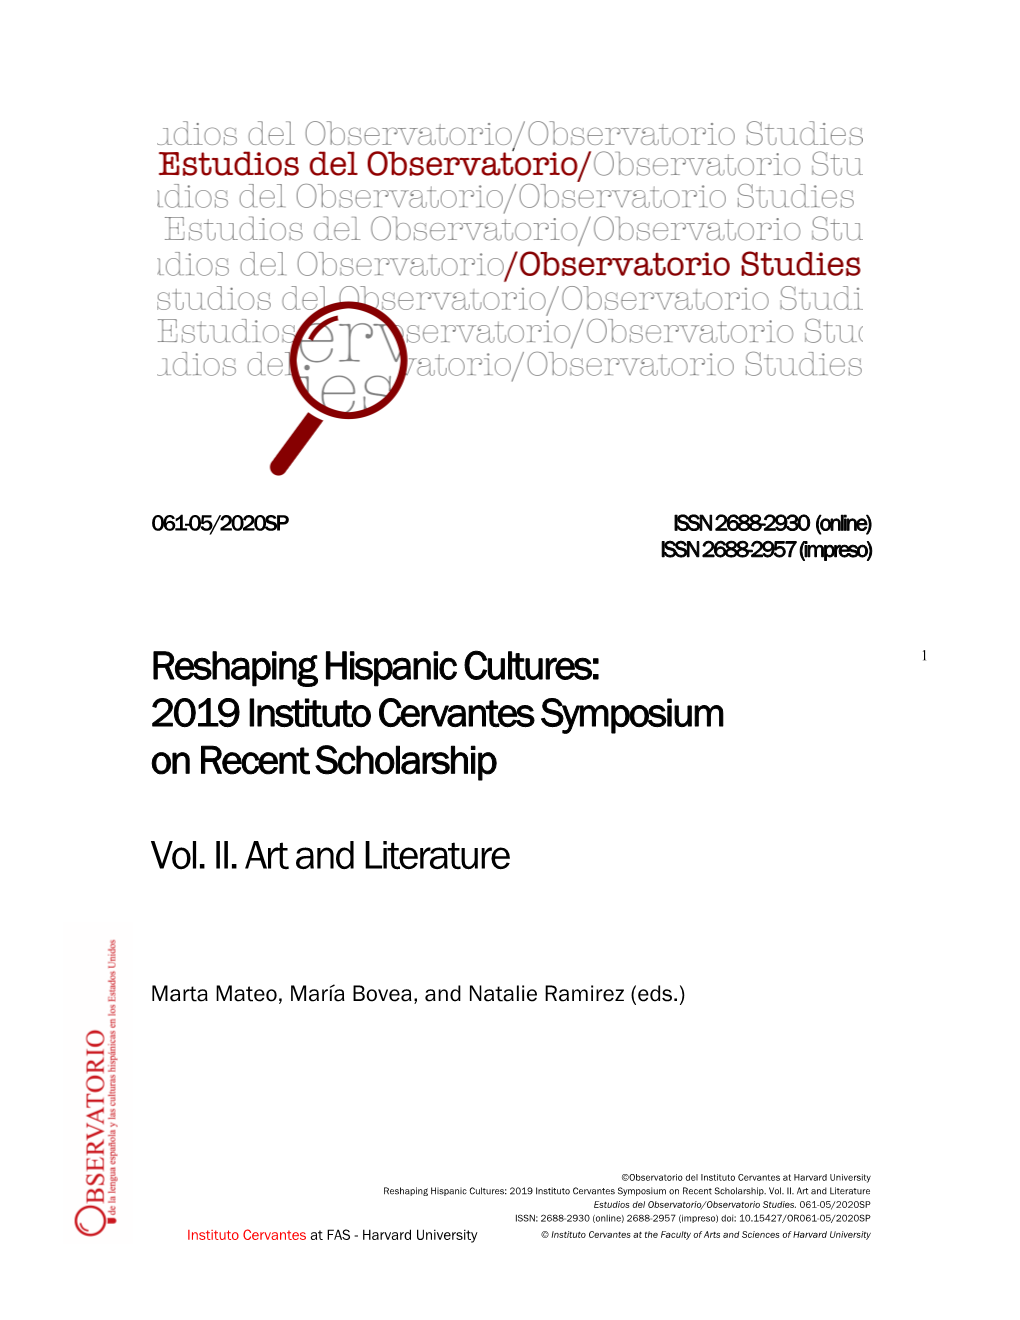 2019 Instituto Cervantes Symposium on Recent Scholarship. Vol. II. Art and Literature Estudios Del Observatorio/Observatorio Studies